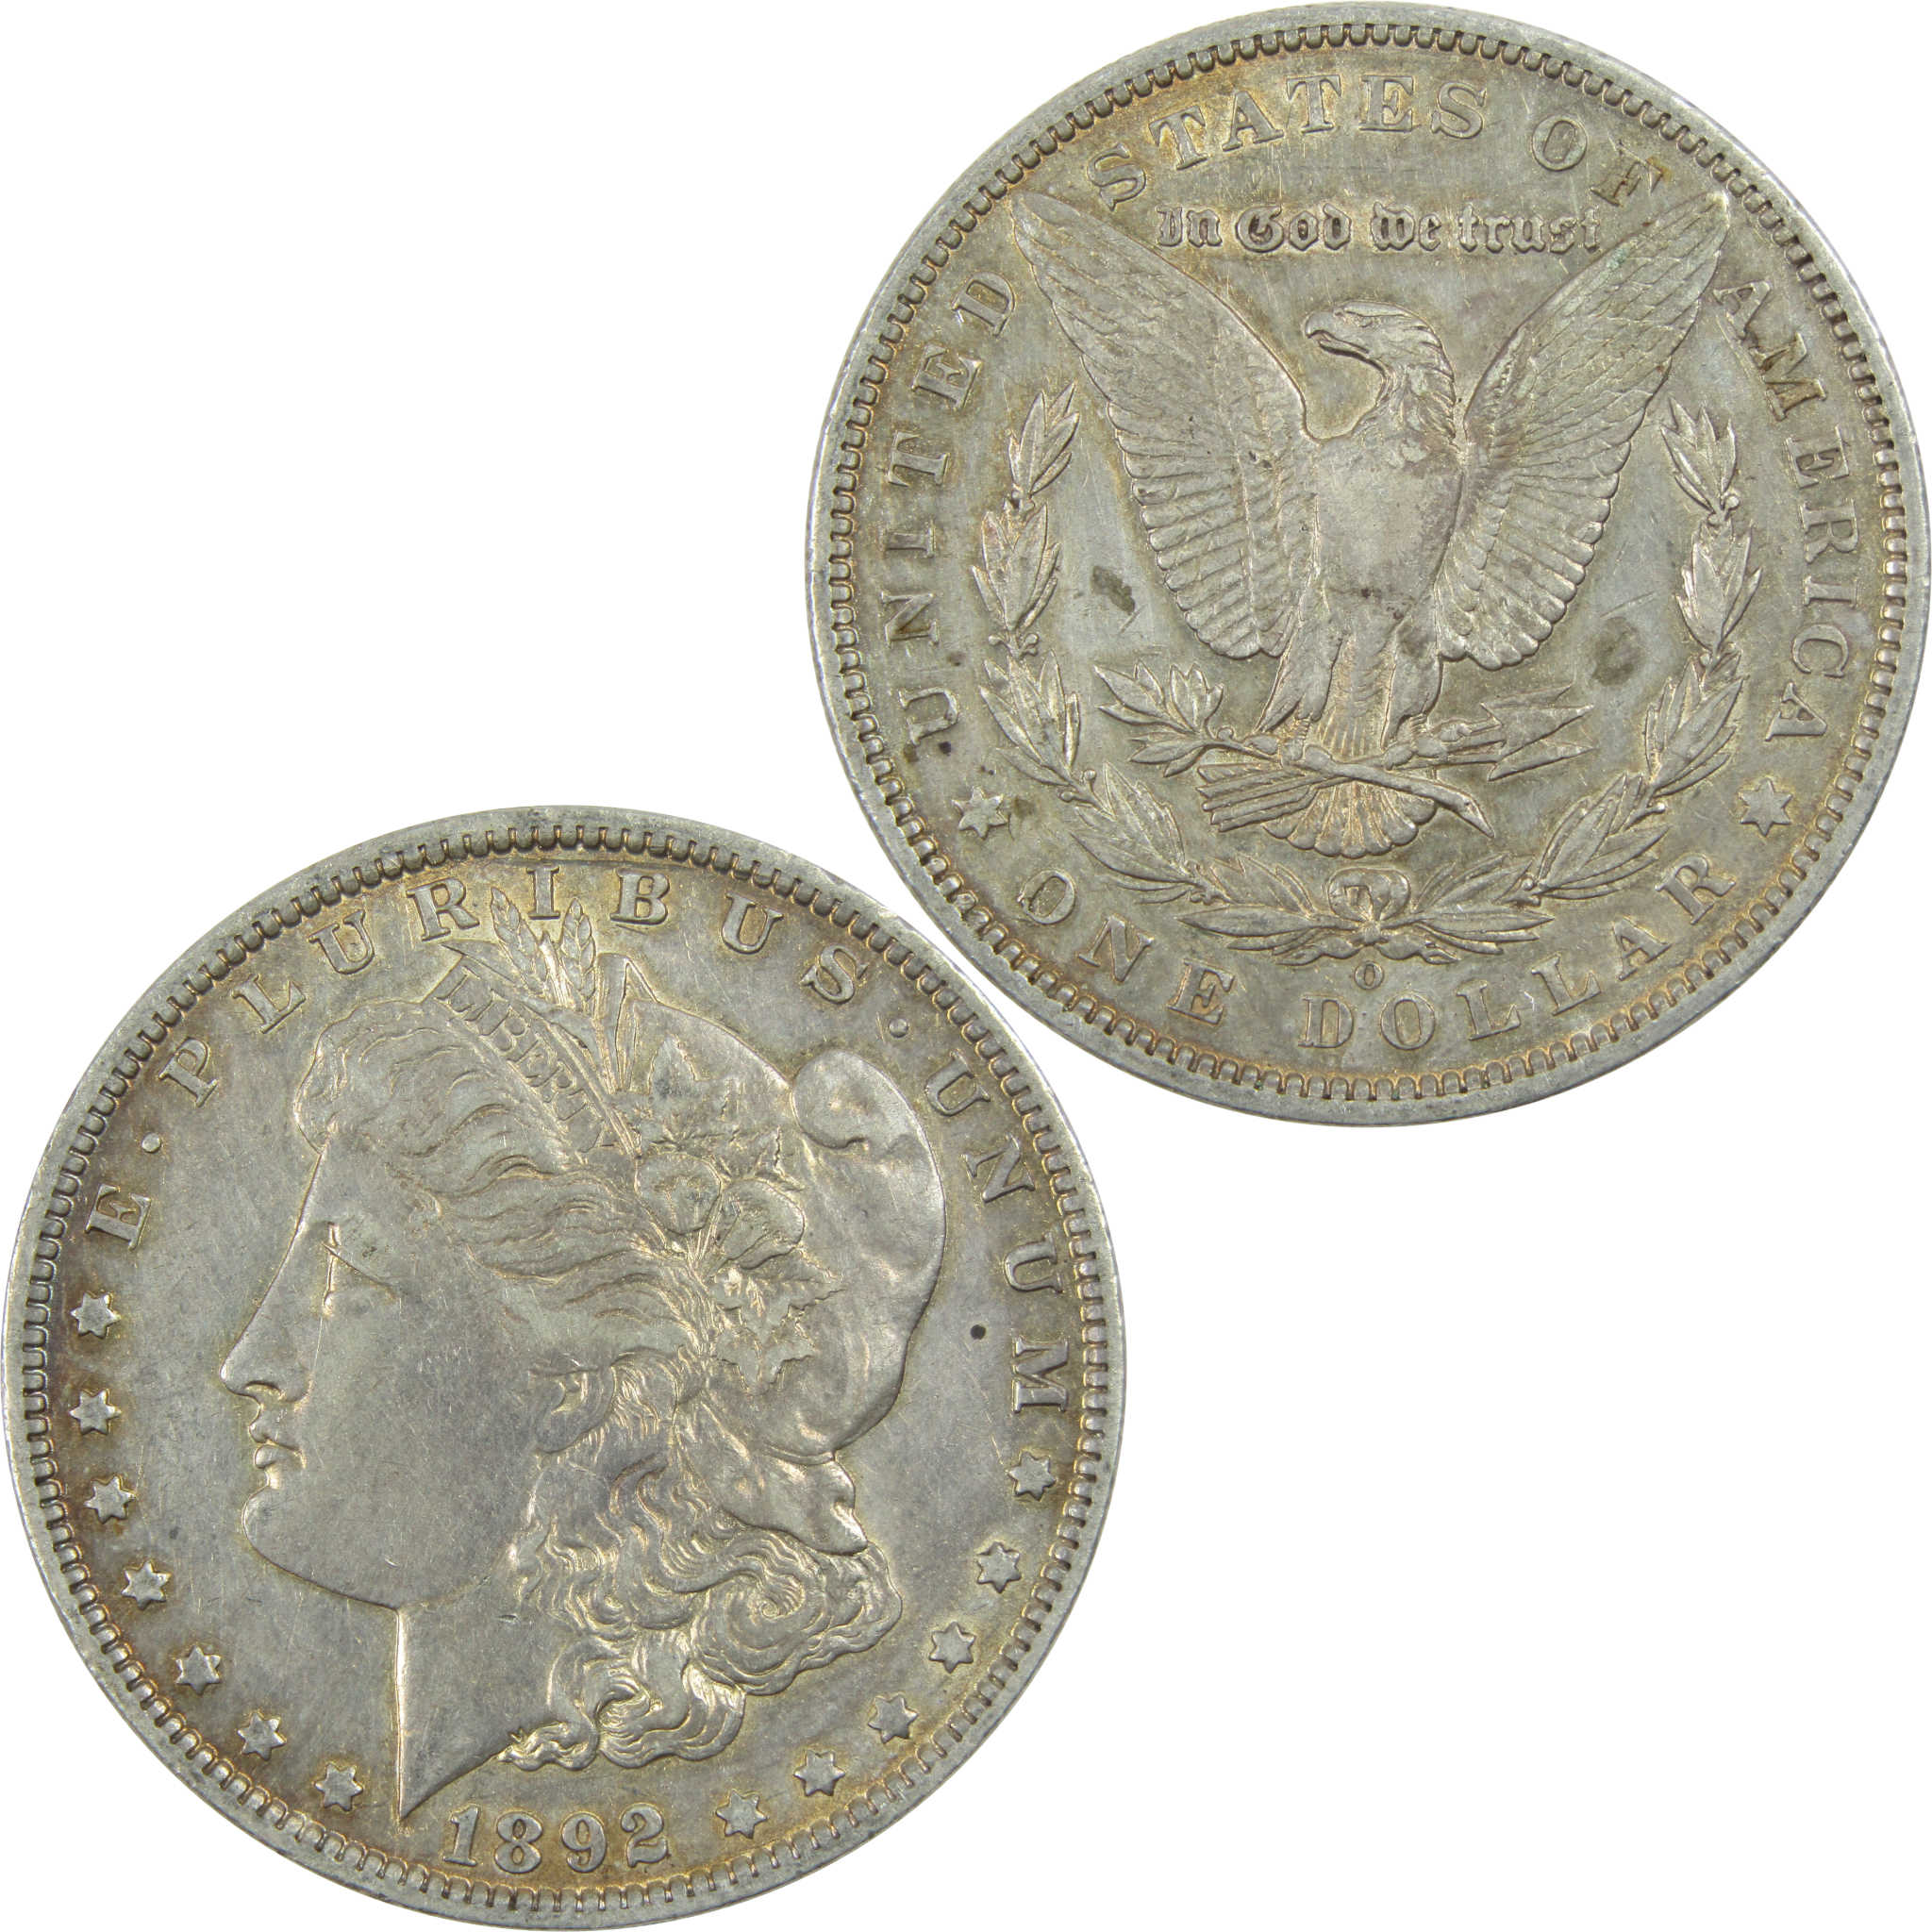 1892 O Morgan Dollar XF EF Extremely Fine Details Silver $1 SKU:I13352 - Morgan coin - Morgan silver dollar - Morgan silver dollar for sale - Profile Coins &amp; Collectibles